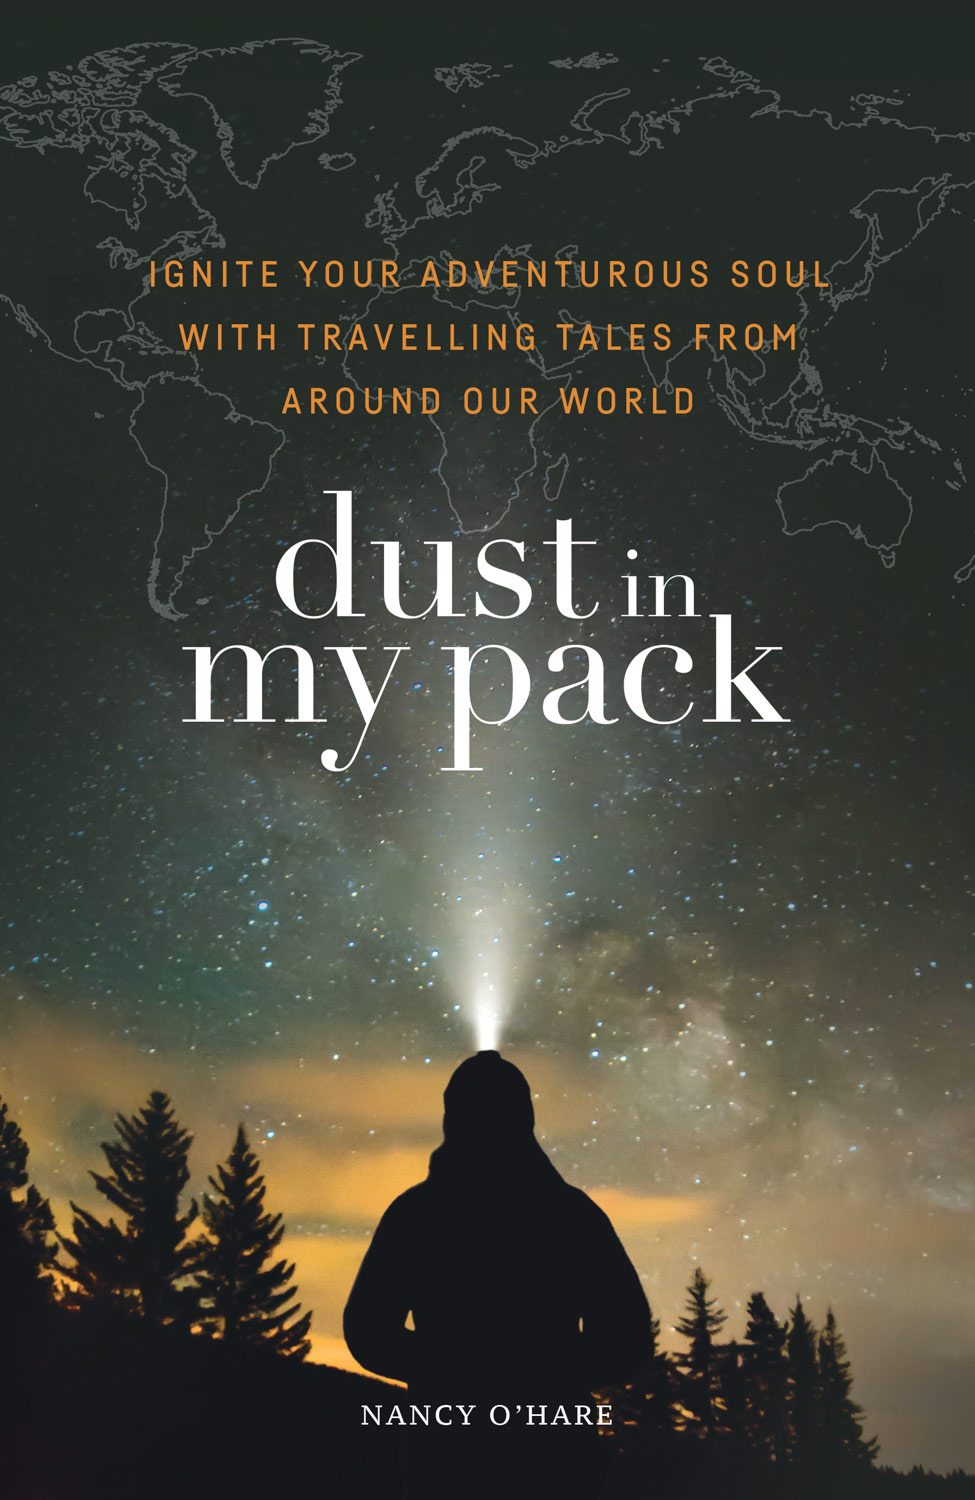 Dust-in-My-Pack-women-Adventure